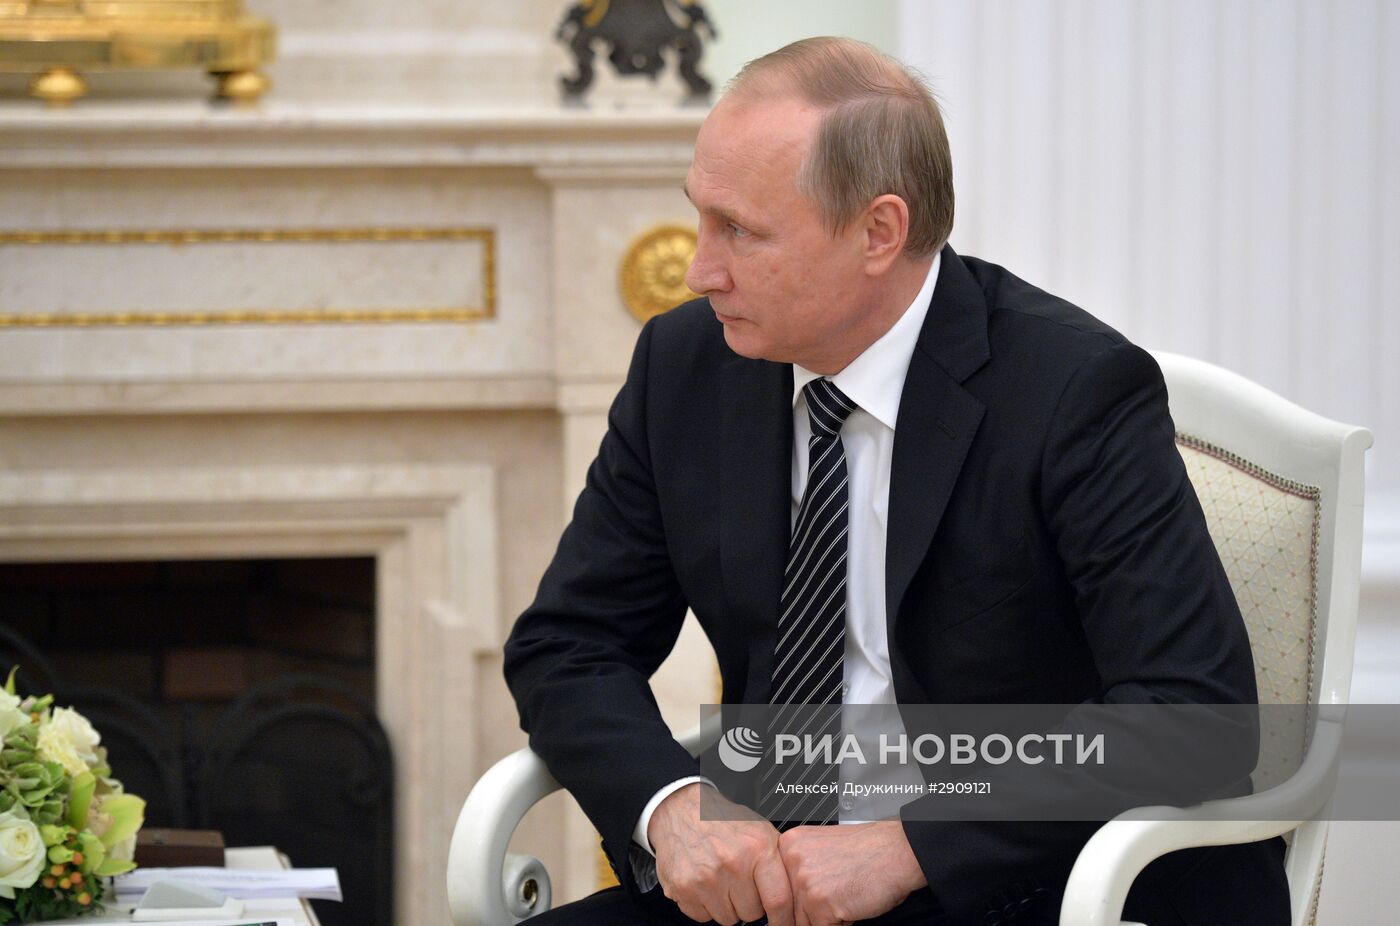 Президент РФ В. Путин встретился с президентом Армении С. Саргсяном